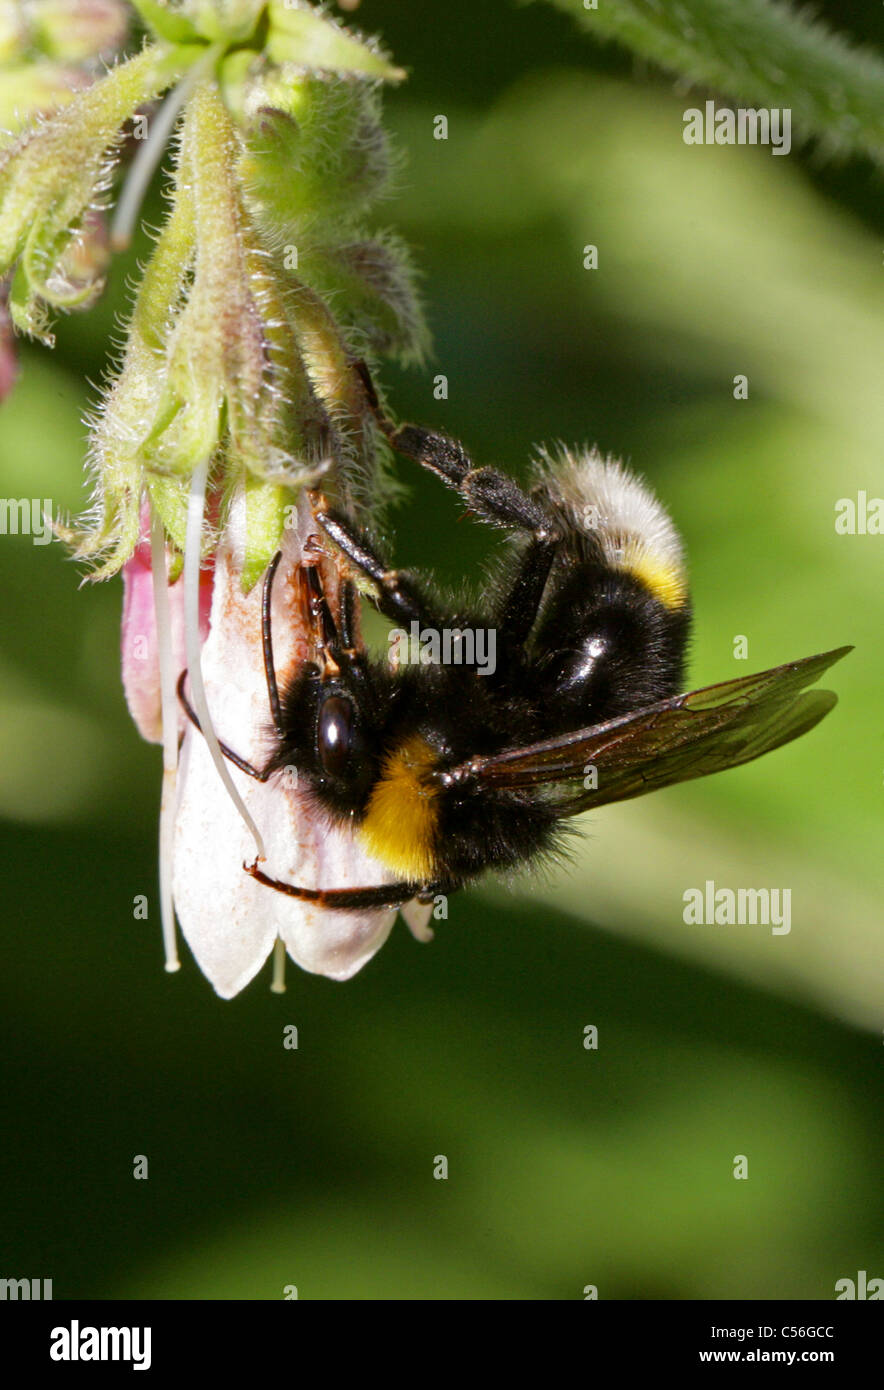 Southern Cuckoo Bumblebee, Bombus vestalis, Apinae, Apidae, Apoidea, Apocrita, Hymenoptera. Syn. Psithyrus vestalis. Stock Photo